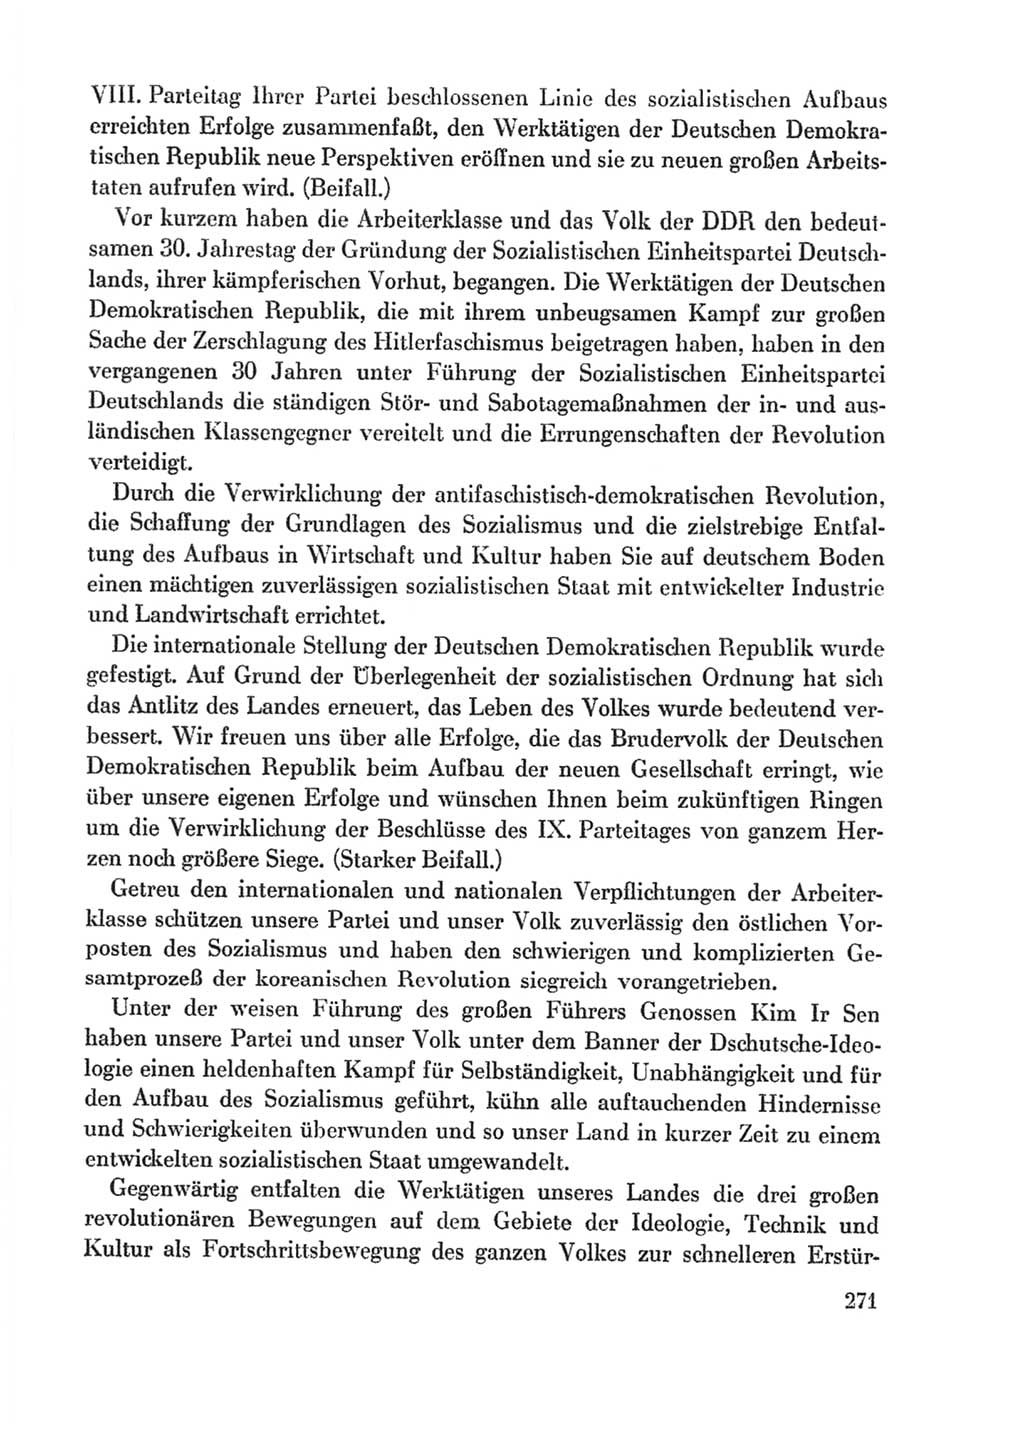 Protokoll der Verhandlungen des Ⅸ. Parteitages der Sozialistischen Einheitspartei Deutschlands (SED) [Deutsche Demokratische Republik (DDR)] 1976, Band 1, Seite 271 (Prot. Verh. Ⅸ. PT SED DDR 1976, Bd. 1, S. 271)